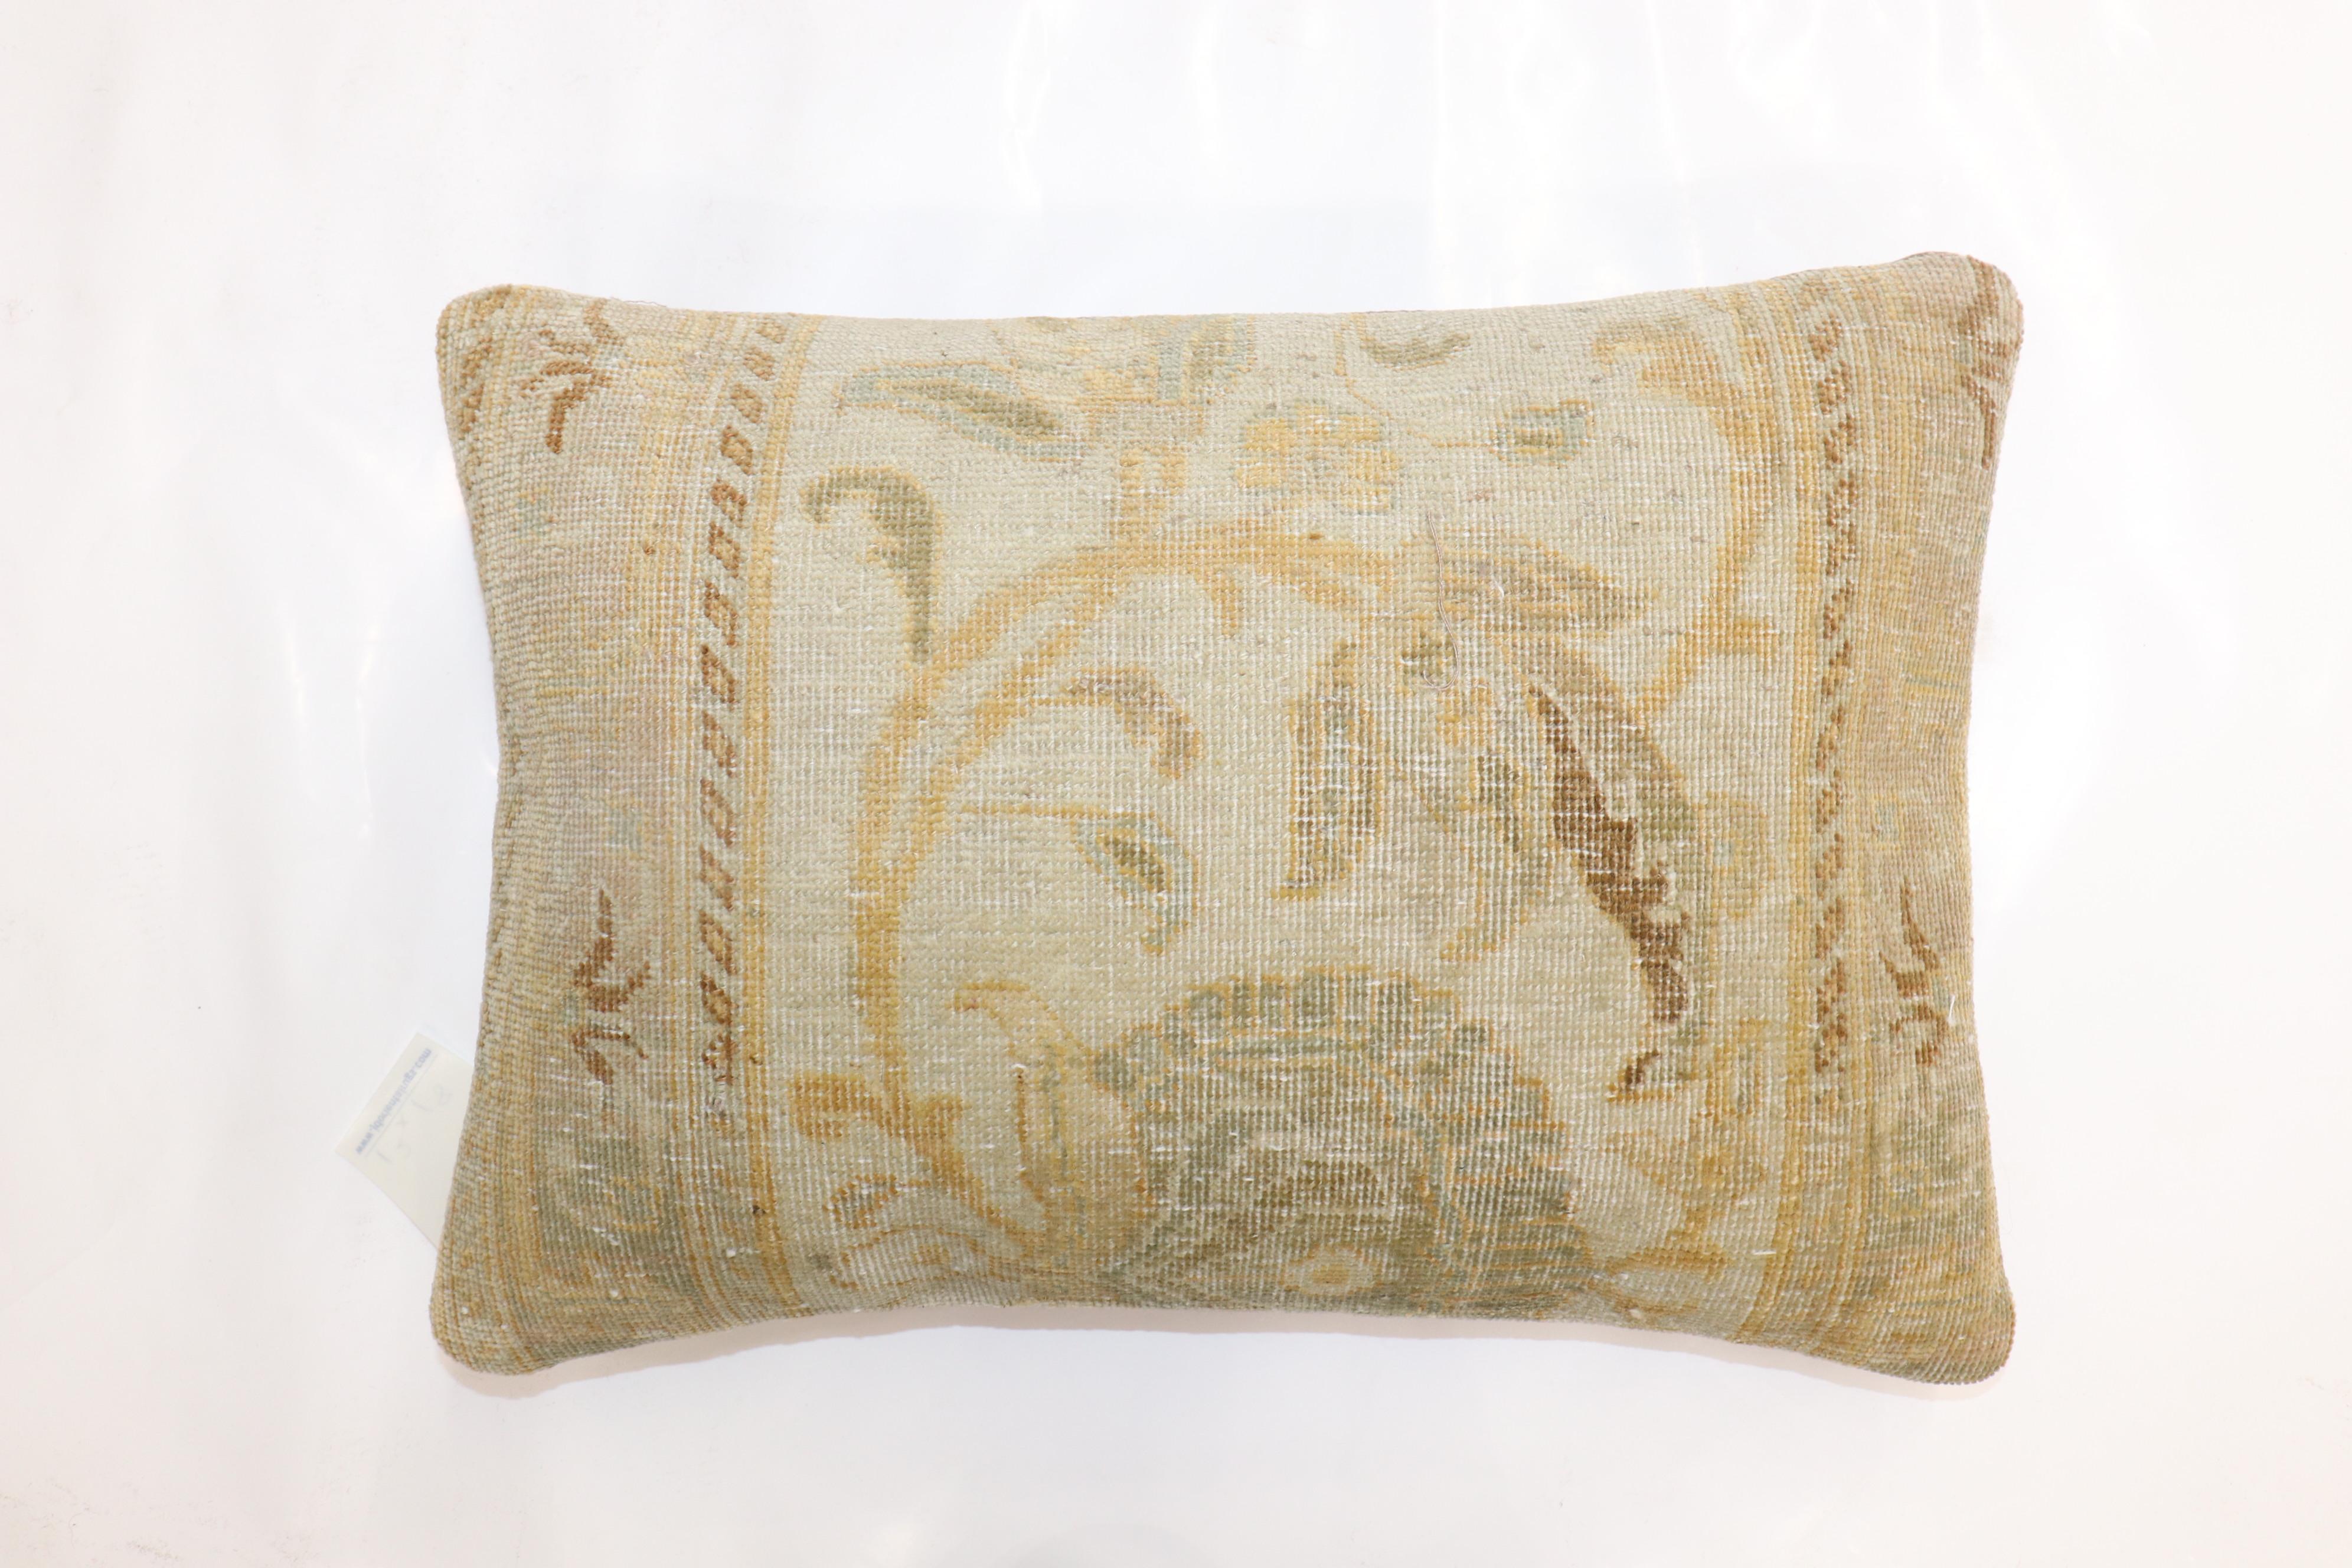 Kissen in Bolstergröße aus einem fein gewebten goldfarbenen persischen Tabriz-Teppich.

Maße: 14'' x 20''.